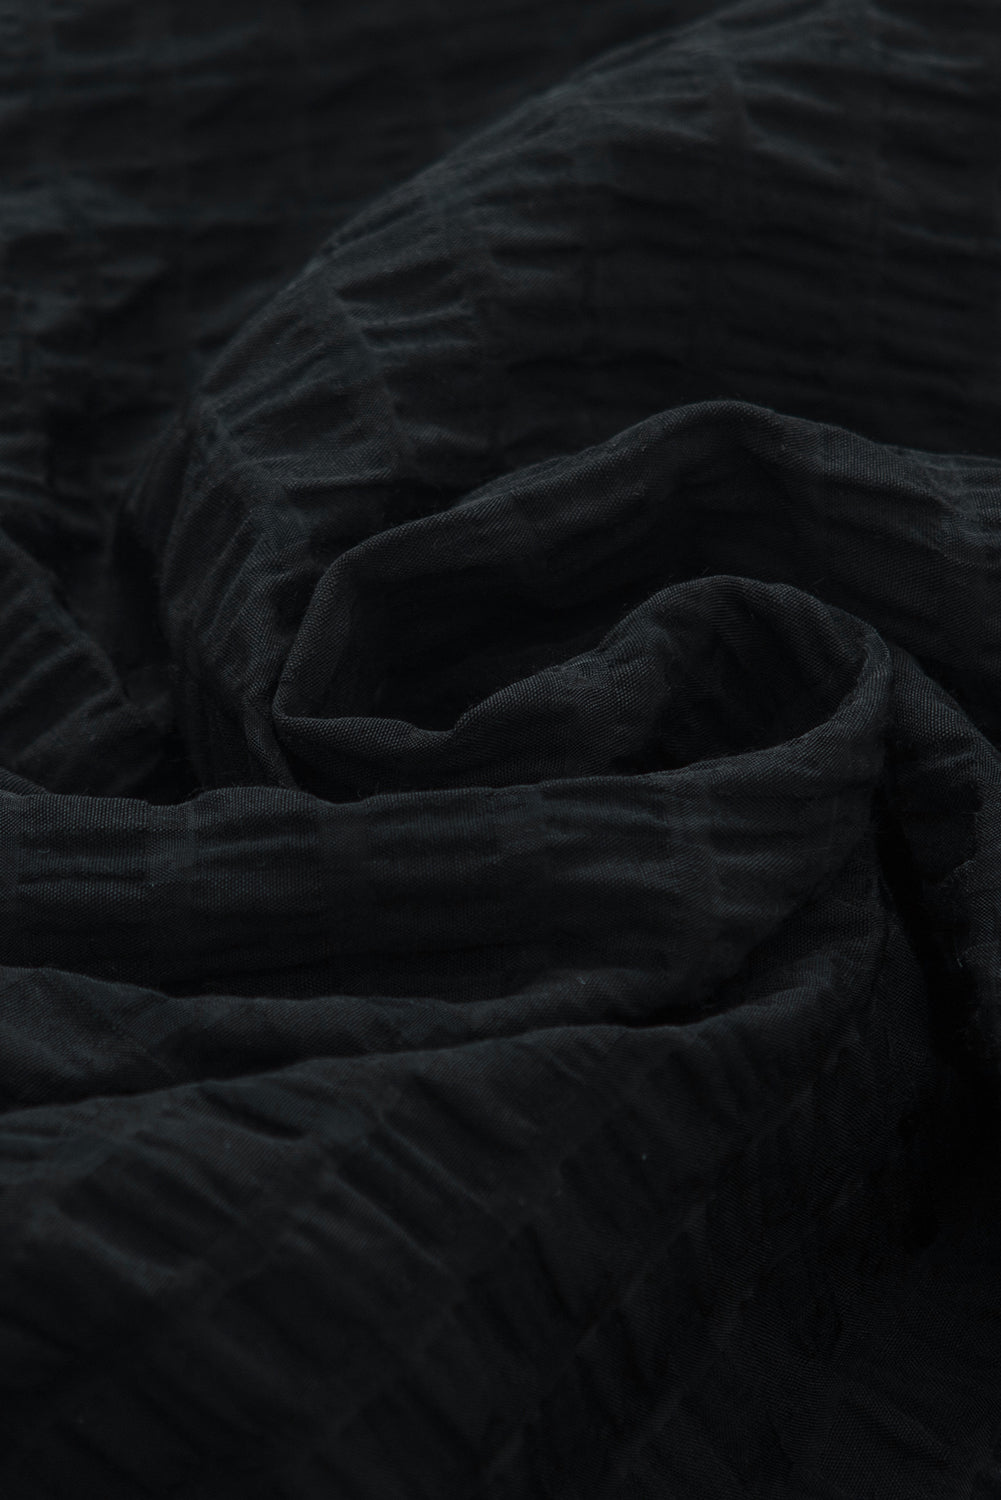 Črna bluza z rokavi iz votle teksture